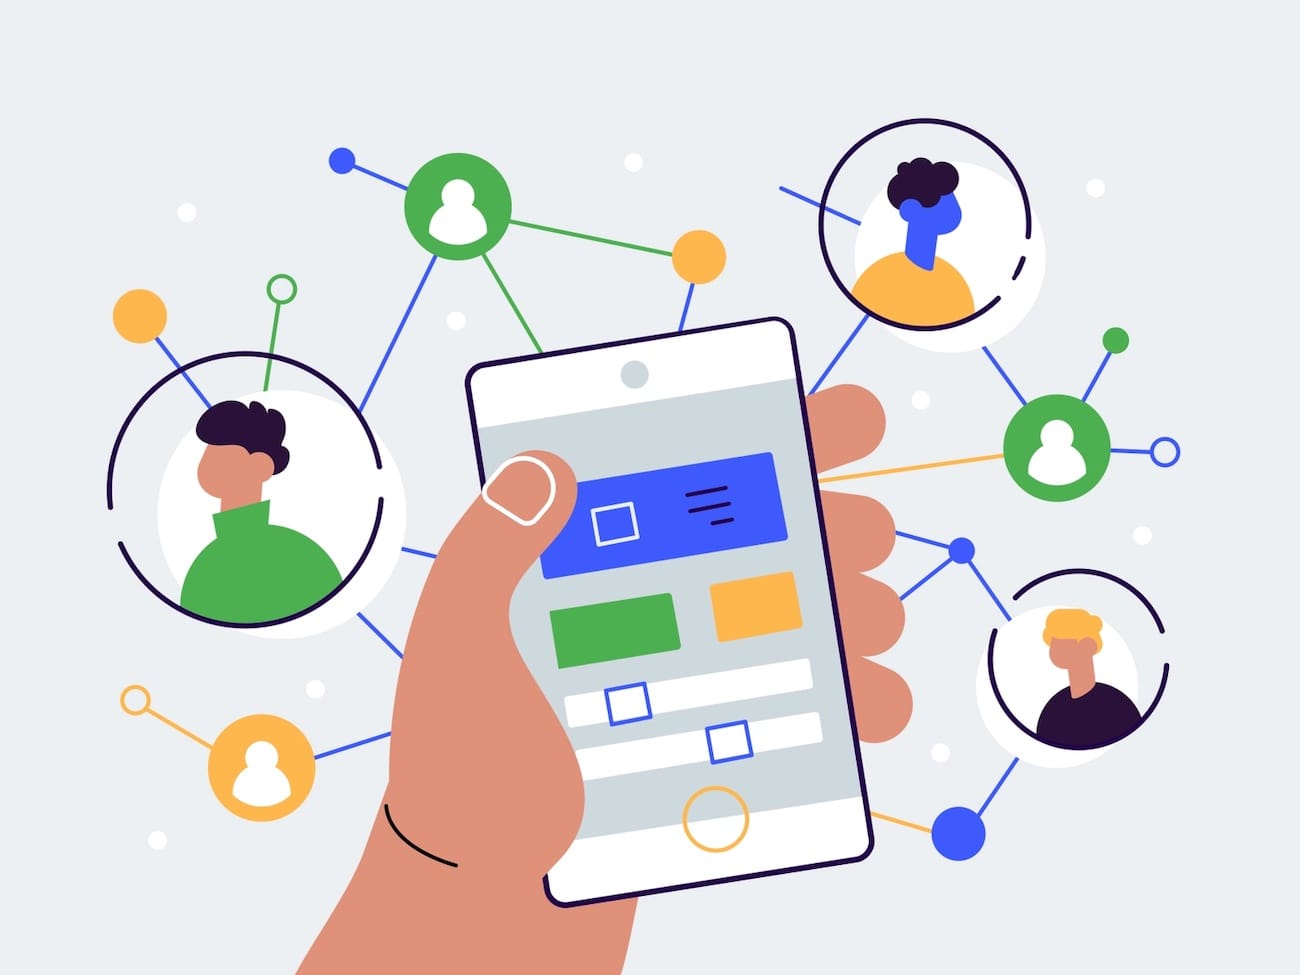 WhatsApp bringt ein neues Interface für Kontakte und Gruppen auf iOS heraus